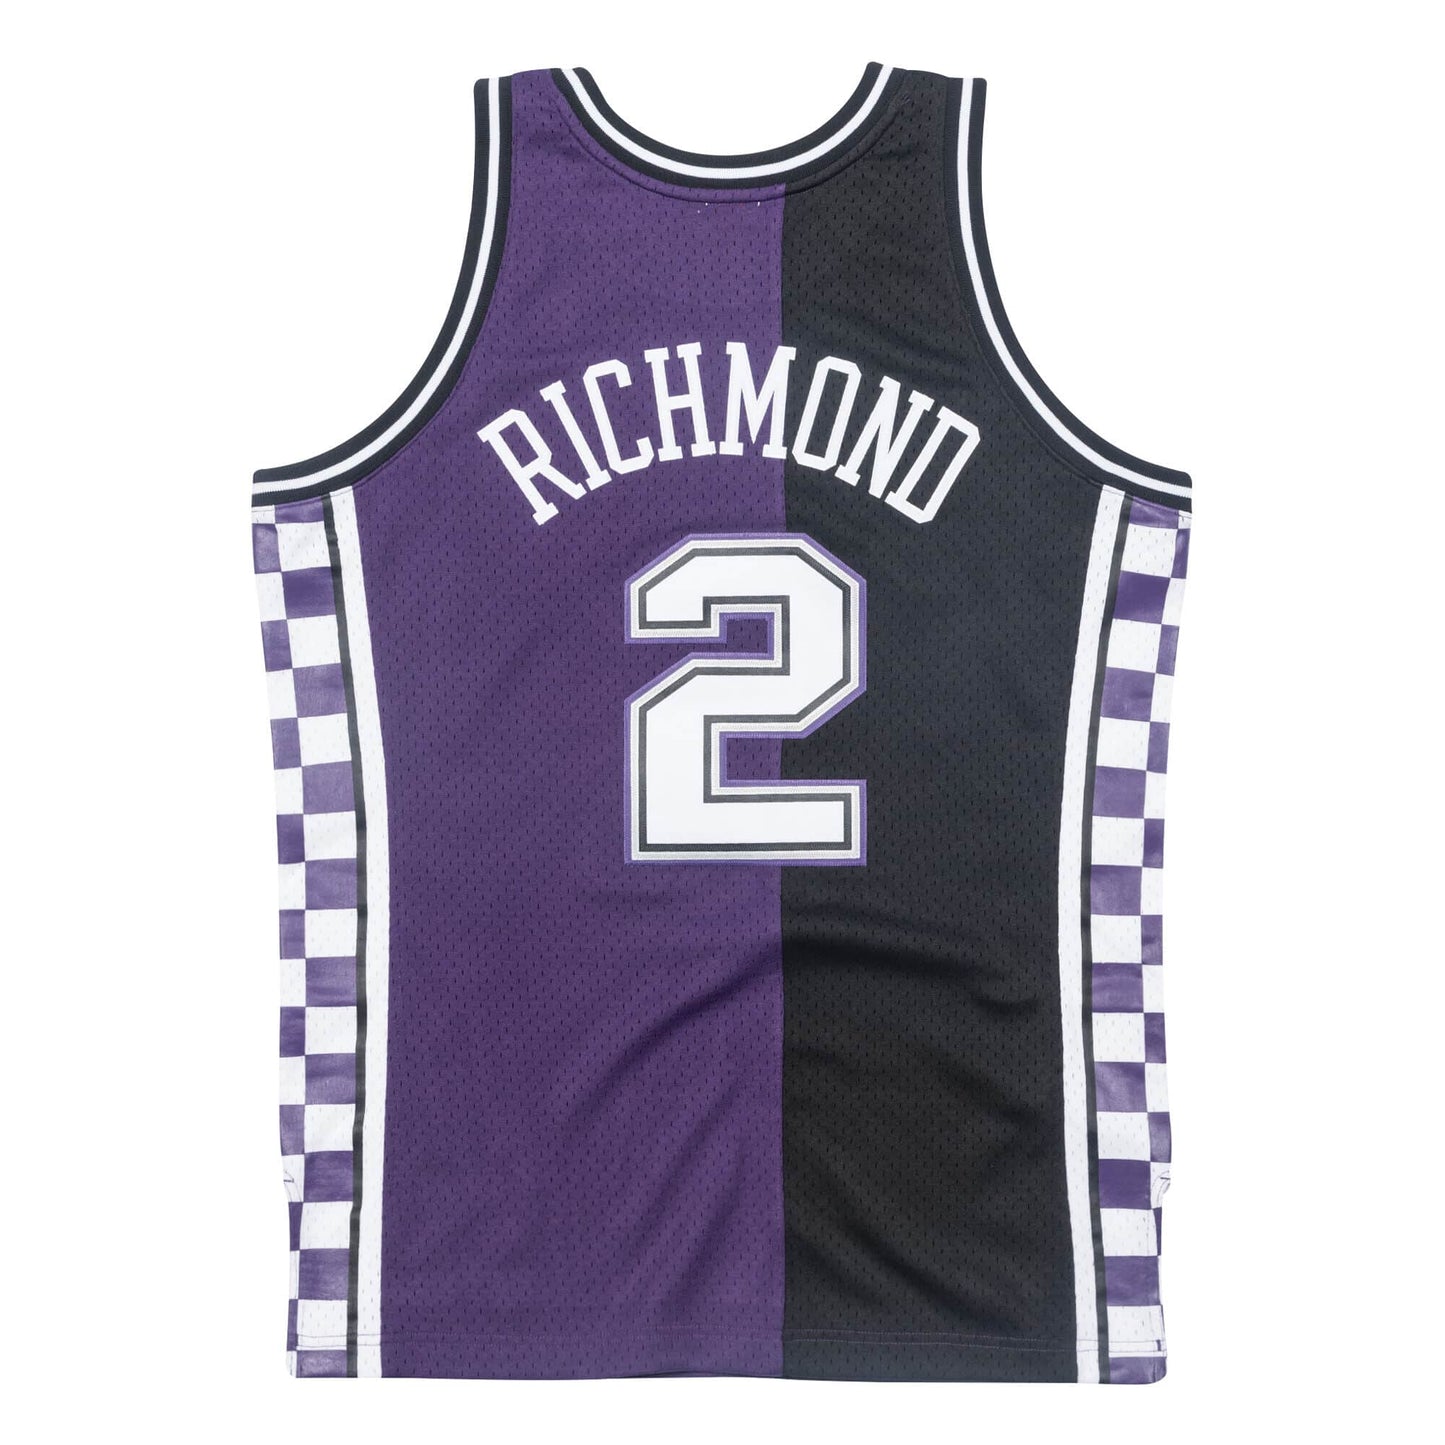 NBA Swingman Jersey Sacramento Kings 1994-95 Mitch Richmond